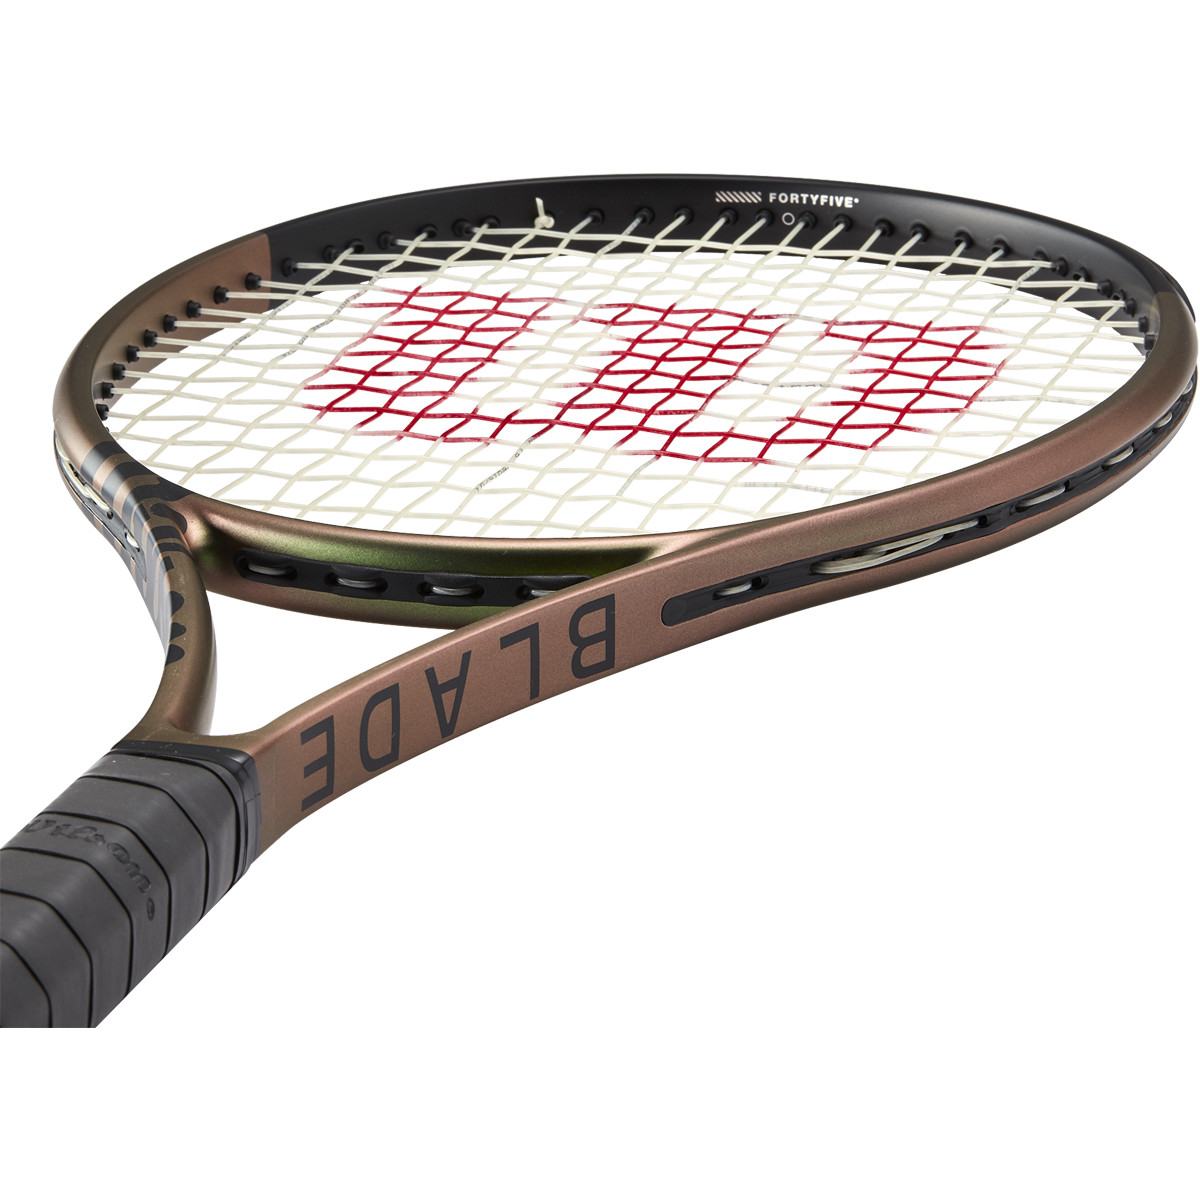 apotheek plan Platteland WILSON BLADE 98 S 18*16 V8.0 RACQUET (295 GR) - WILSON - Adult Racquets -  Racquets | Tennispro